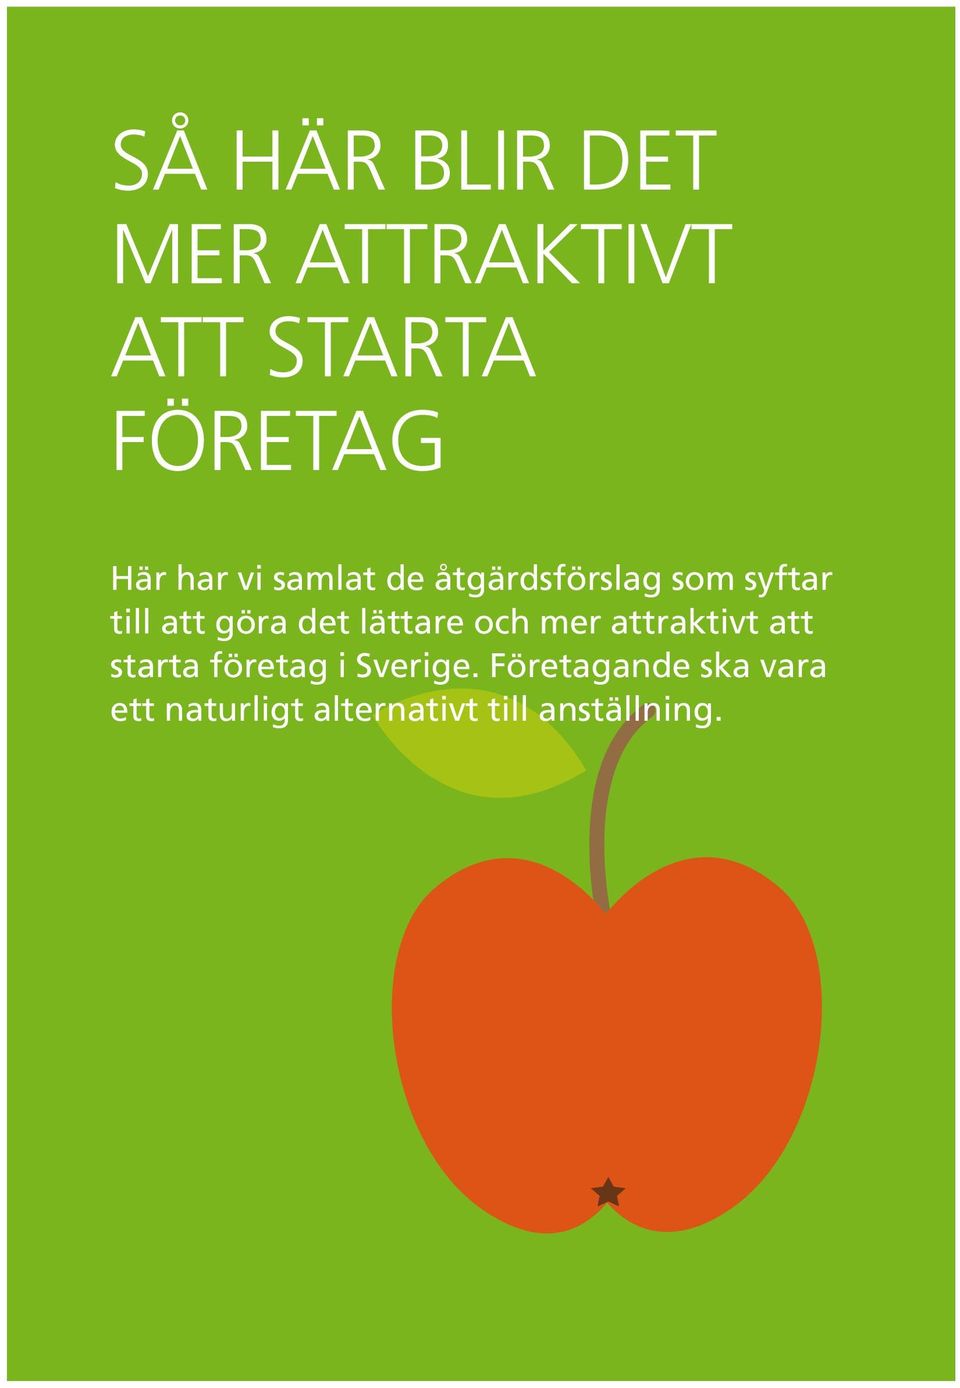 lättare och mer attraktivt att starta företag i Sverige.